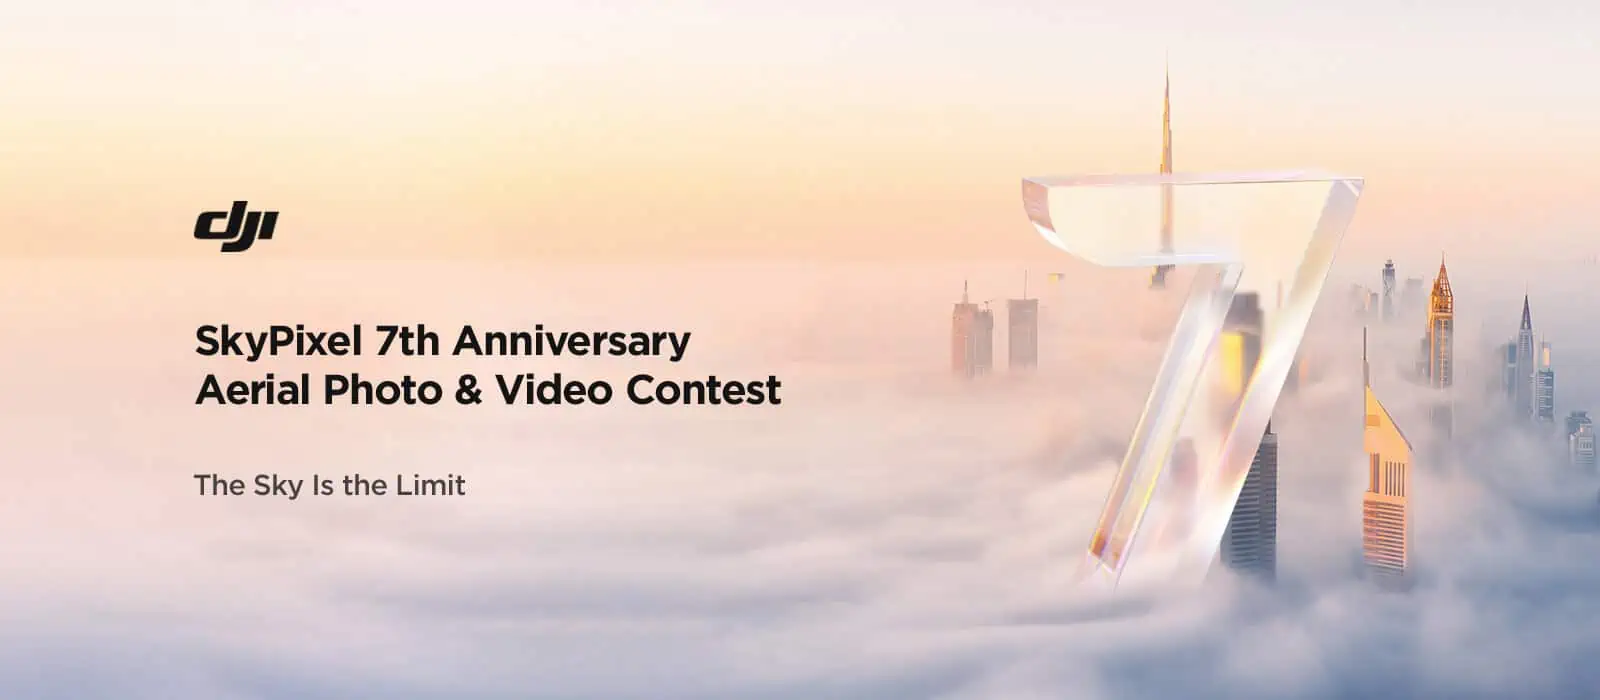 Skypixel e Dji: annunciato il nuovo video e photo contest